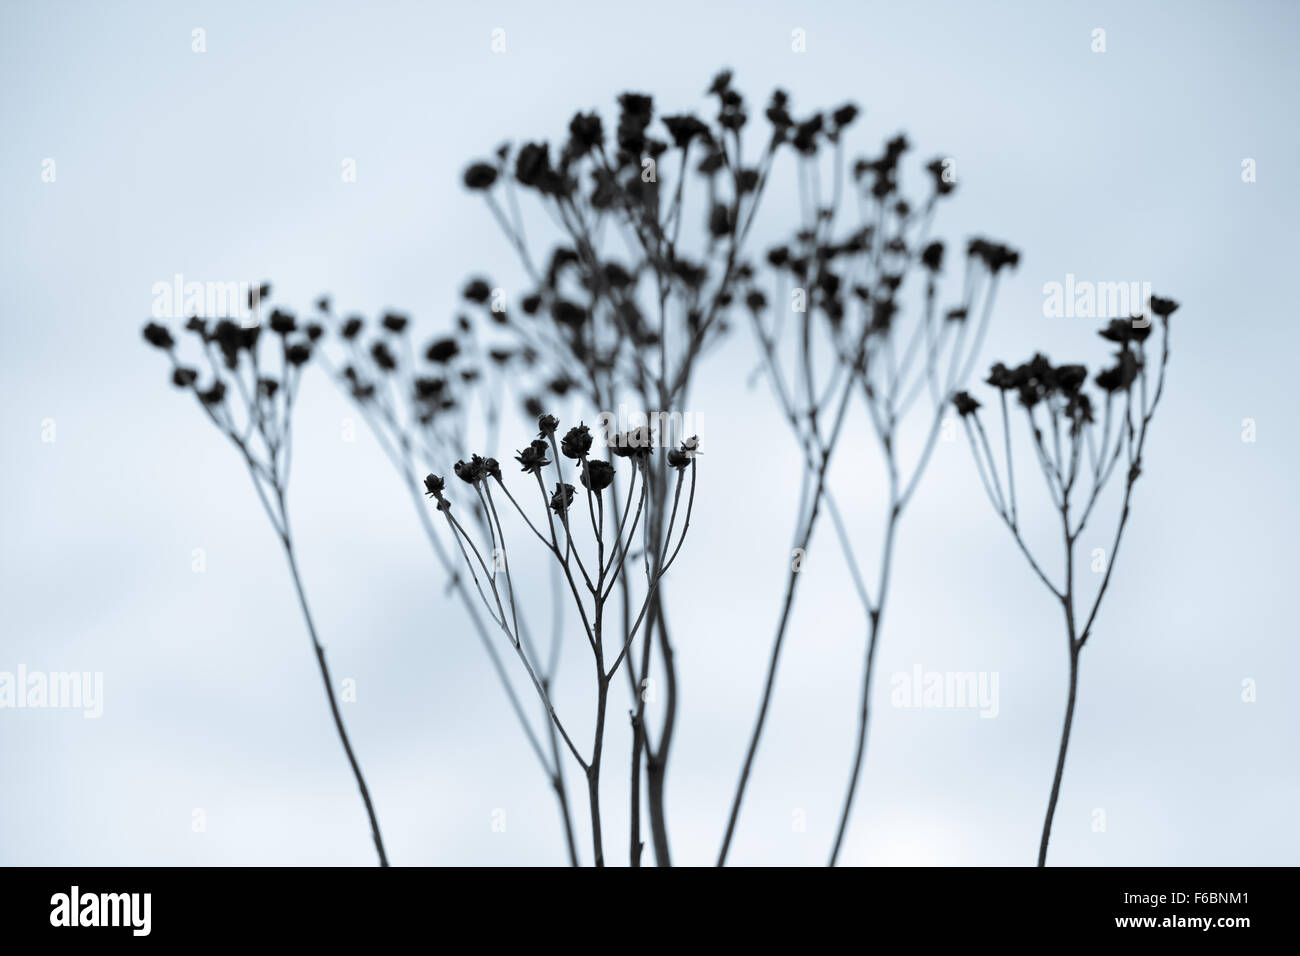 Les fleurs mortes sèches sur fond de ciel bleu des silhouettes en hiver Banque D'Images